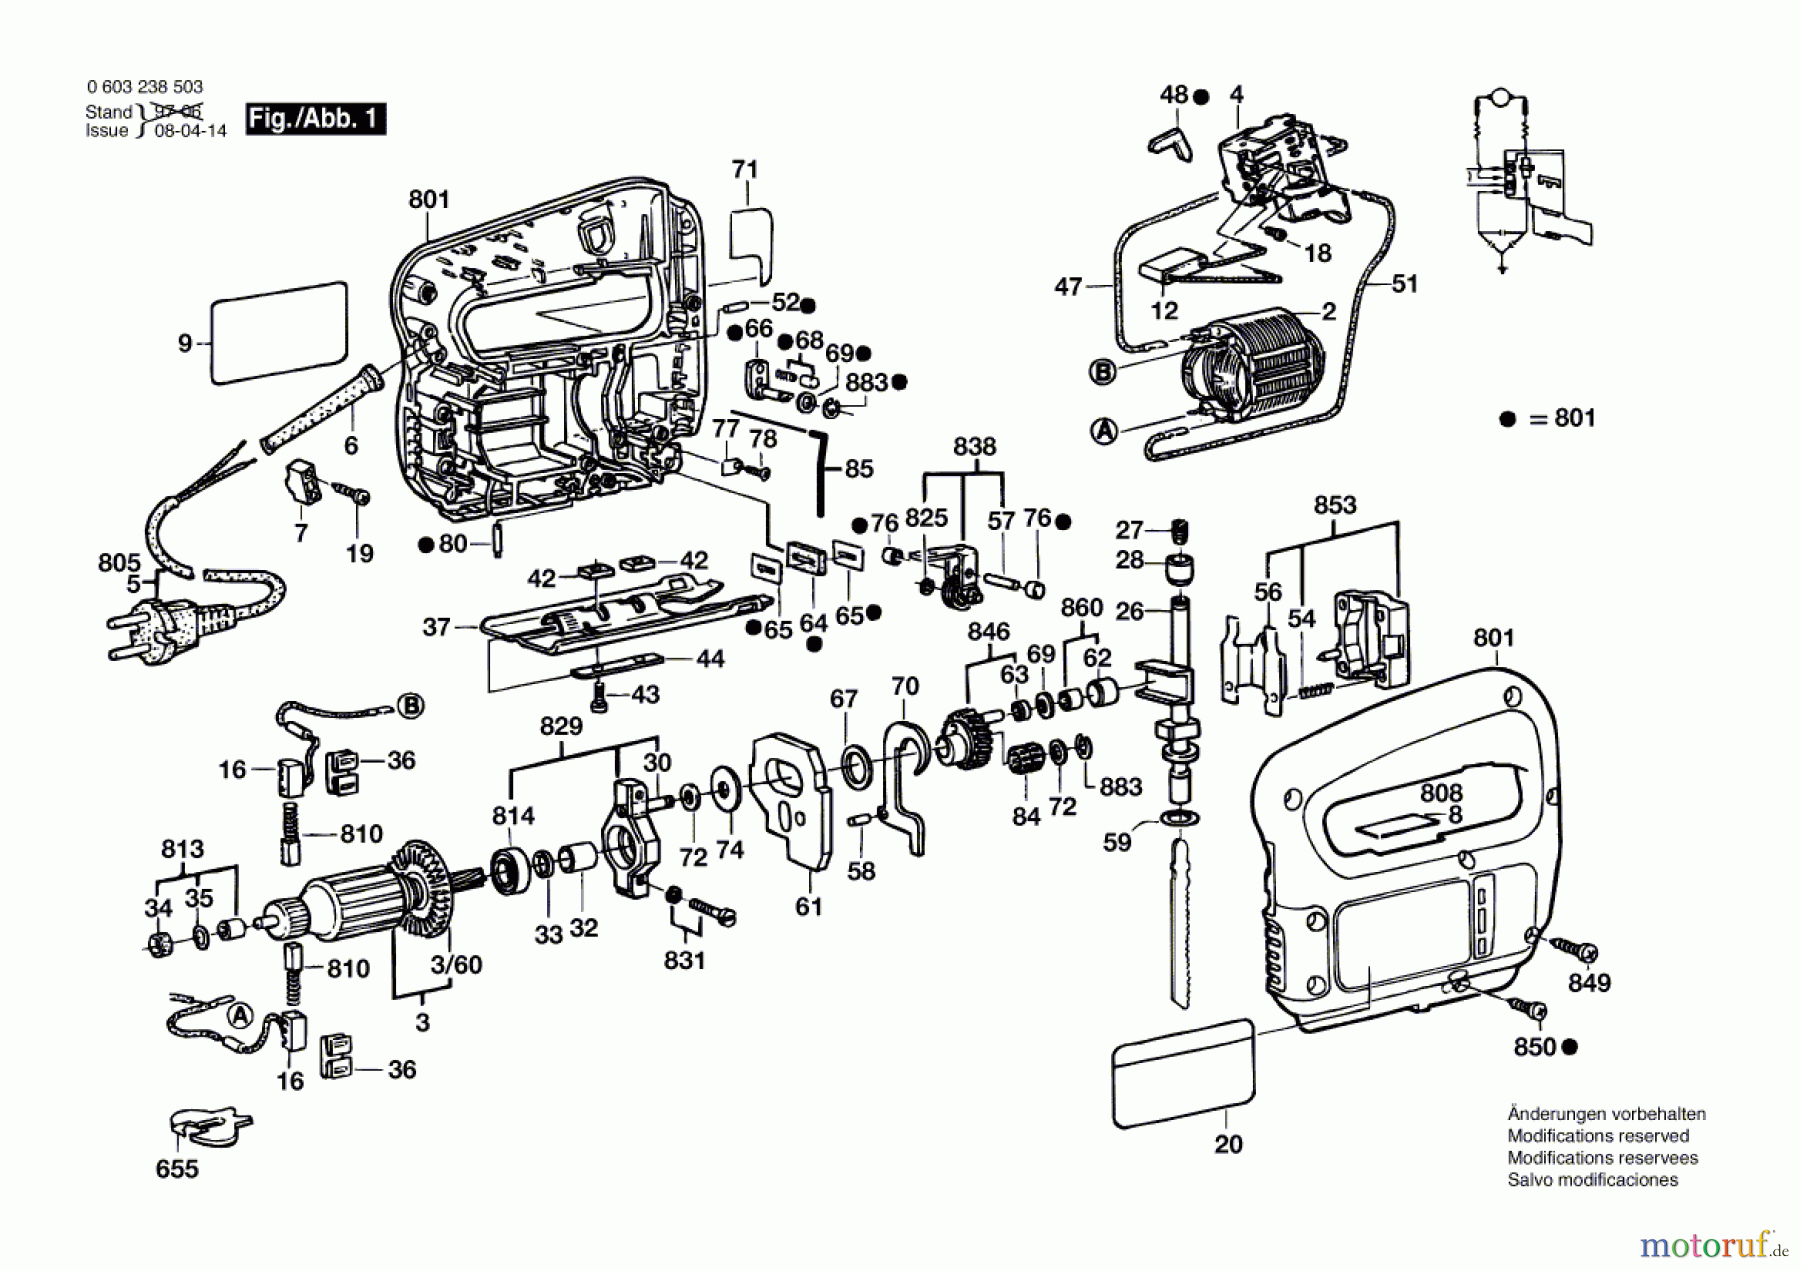  Bosch Werkzeug Stichsäge PST 50 PE Seite 1